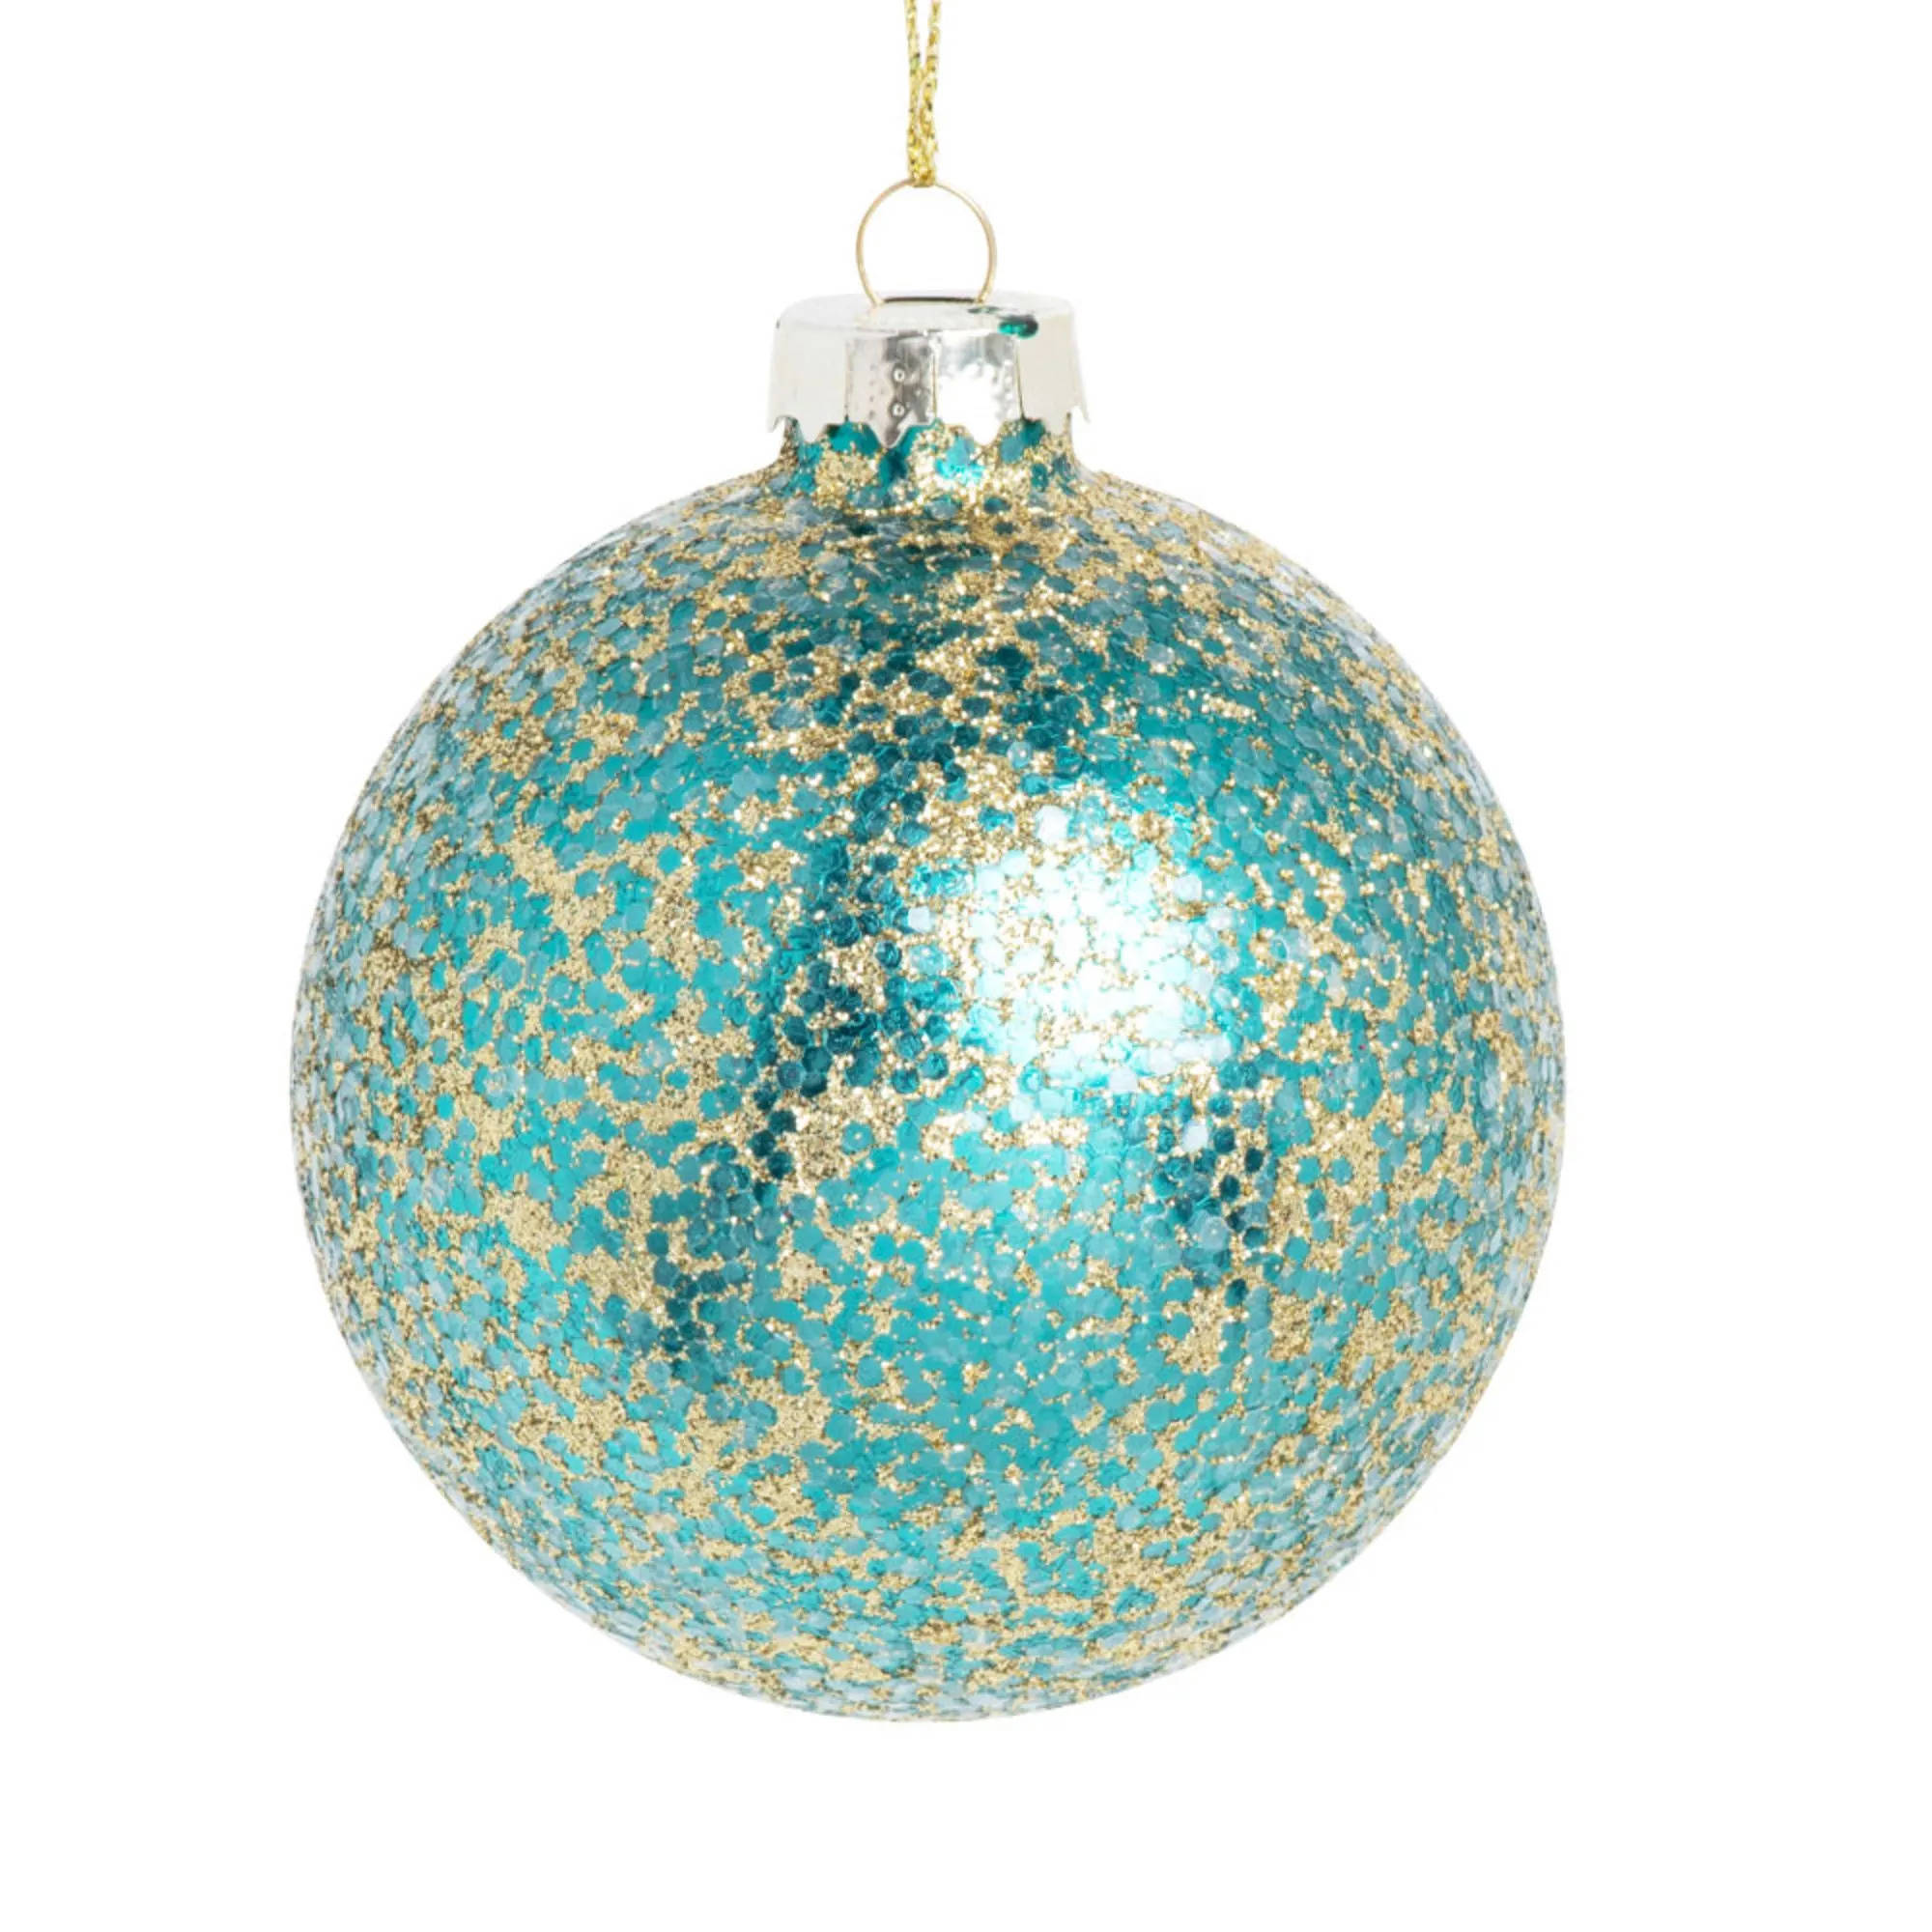 Bola de Navidad de cristal con purpurina azul turquesa y dorado de Maisons du Monde.